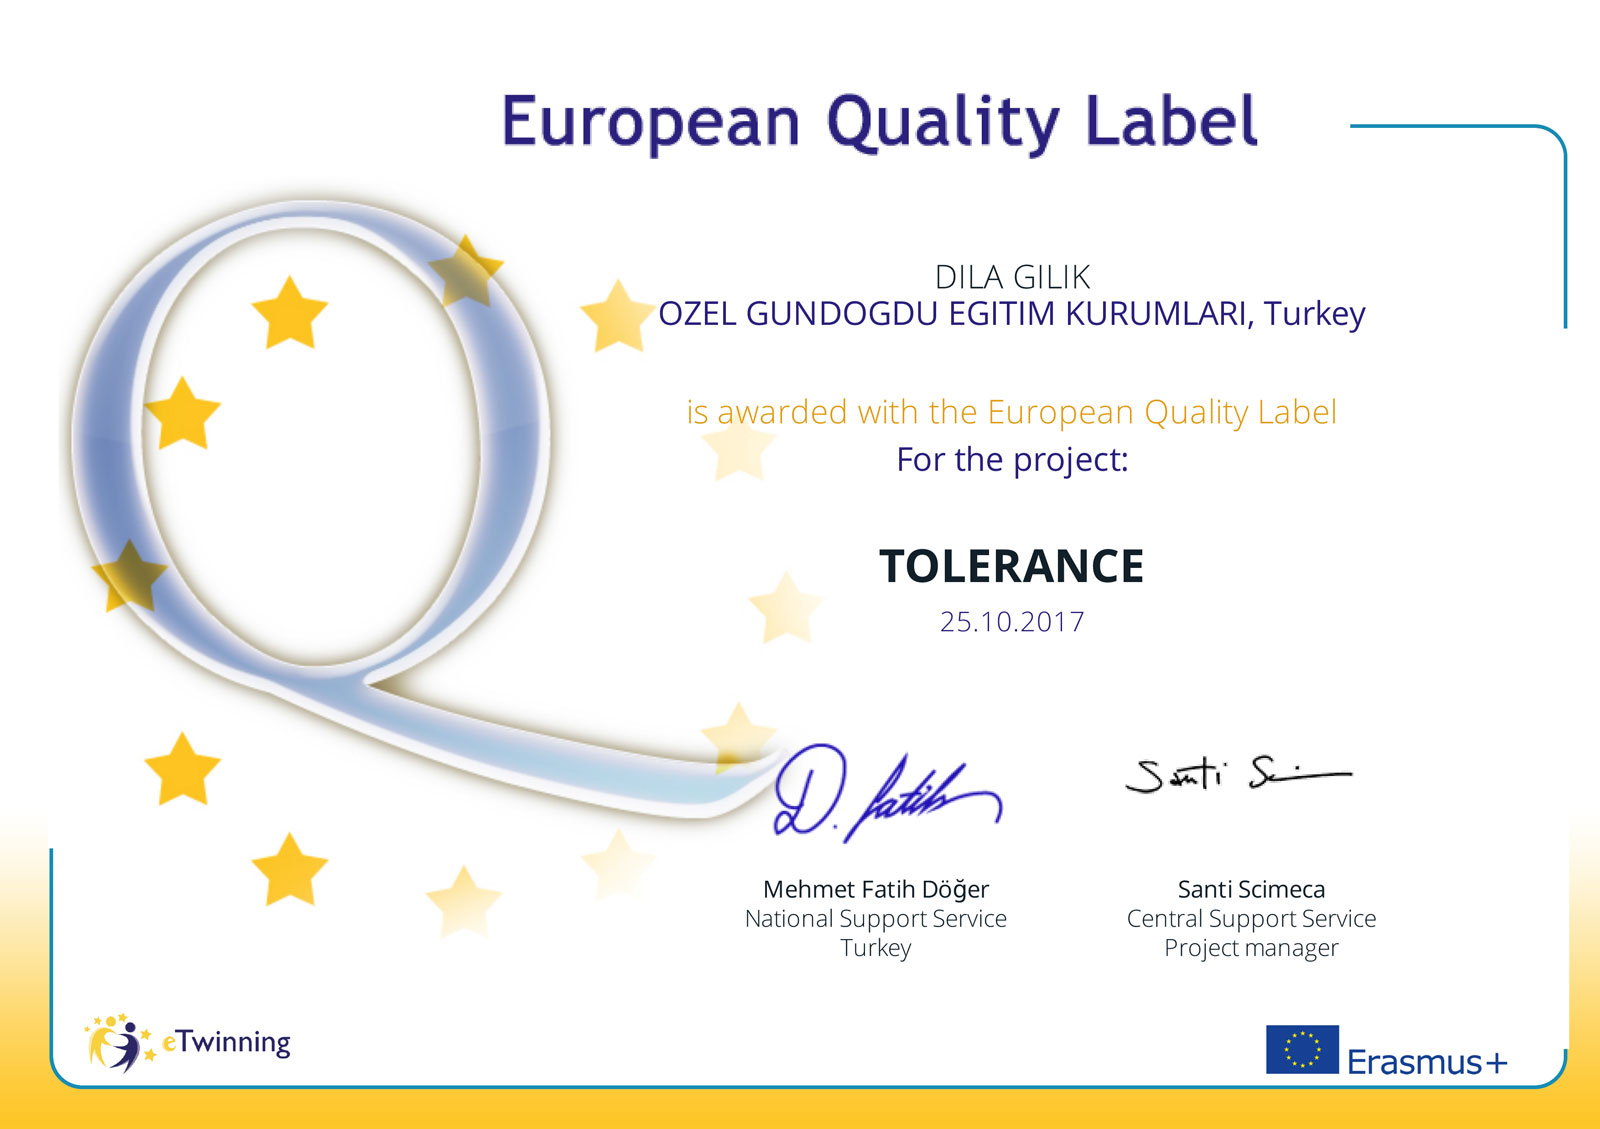 TOLERANCE – “Avrupa Kalite Ödülü” aldığımız projemiz